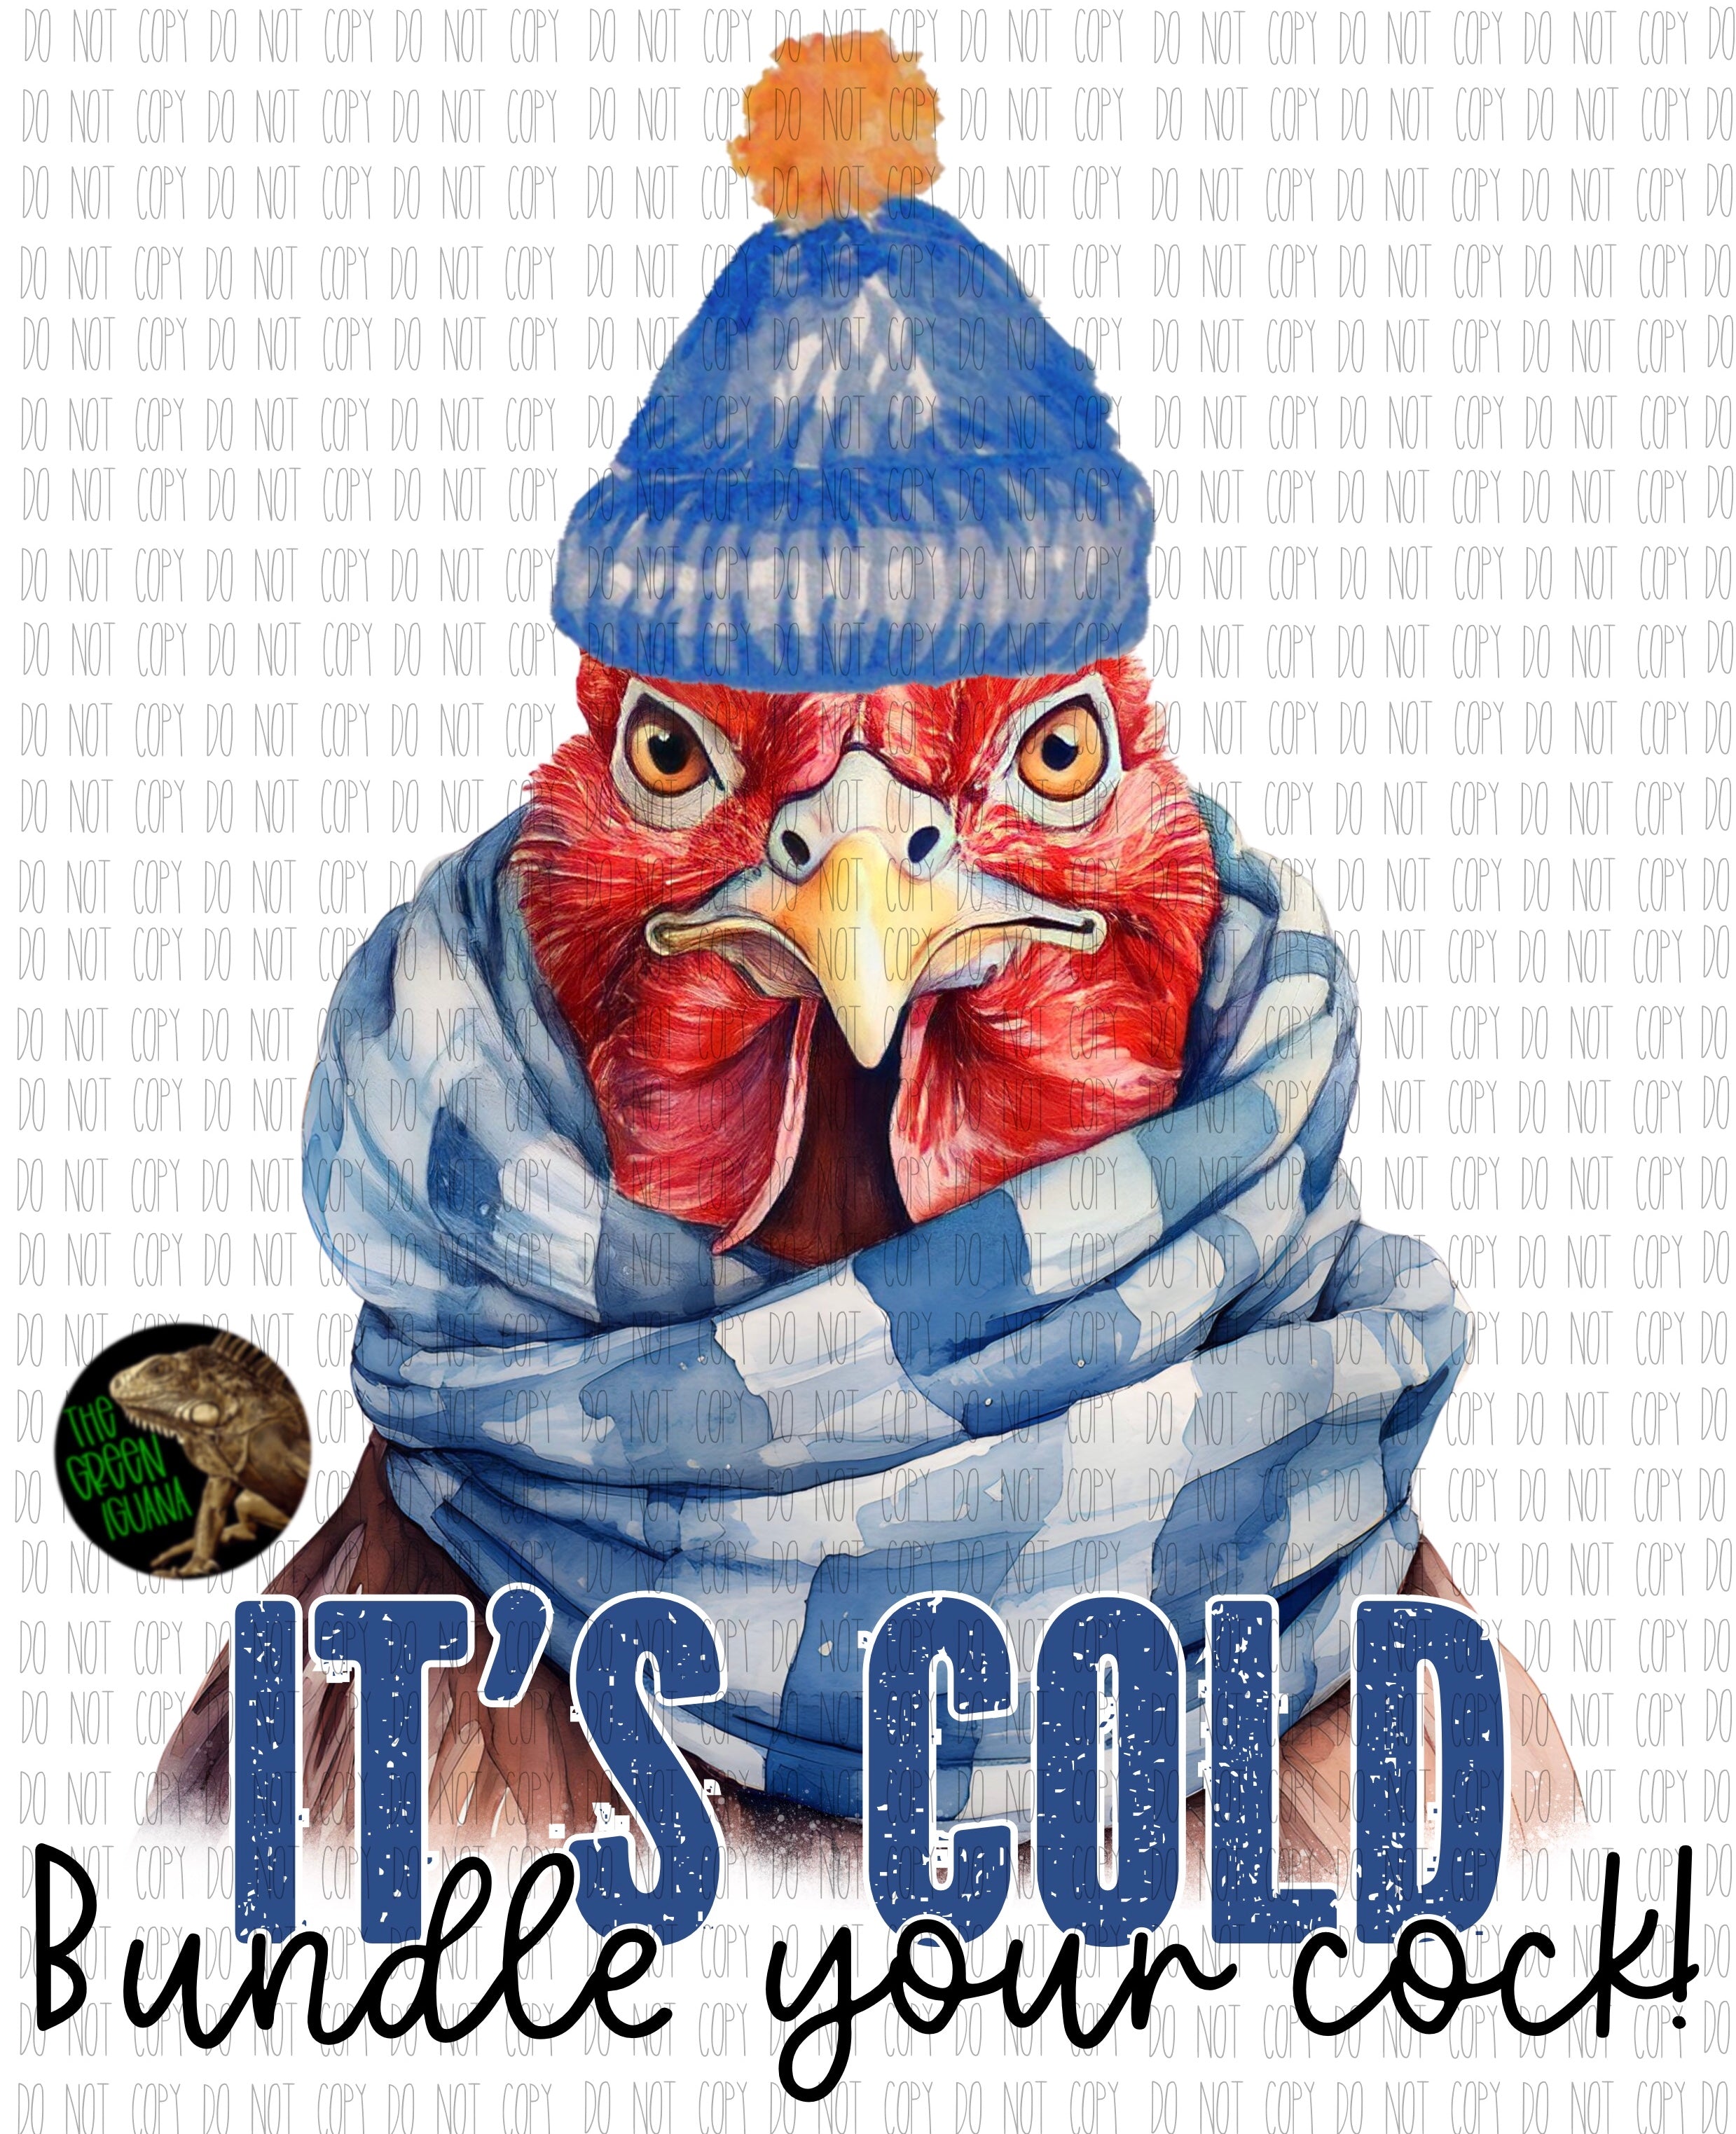 It’s cold, bundle your cock! - DIGITAL